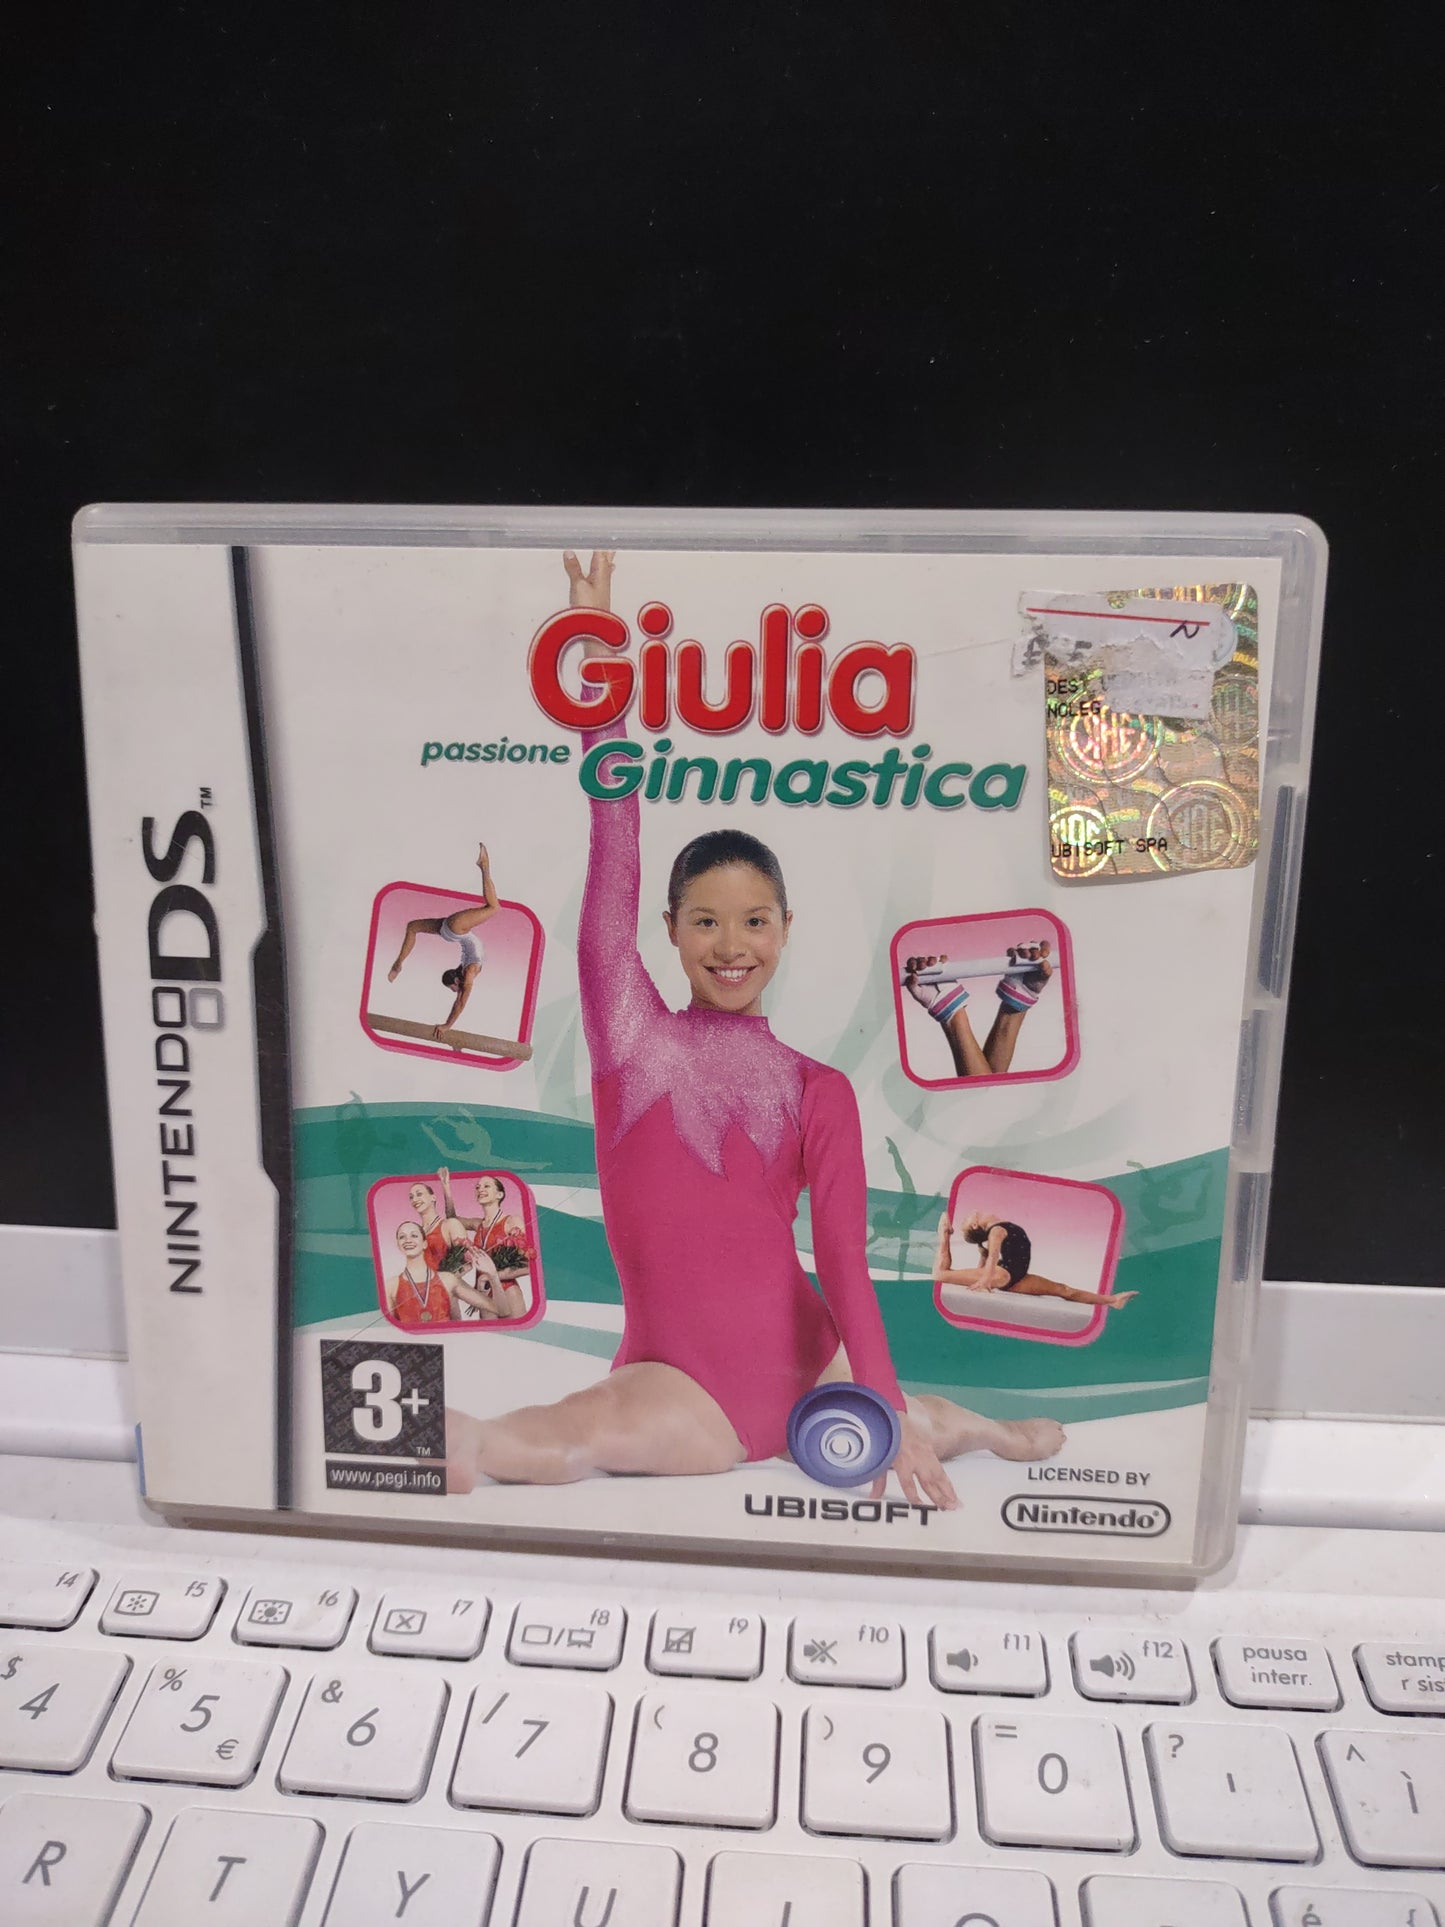 Gioco Nintendo Ds Giulia ginnastica